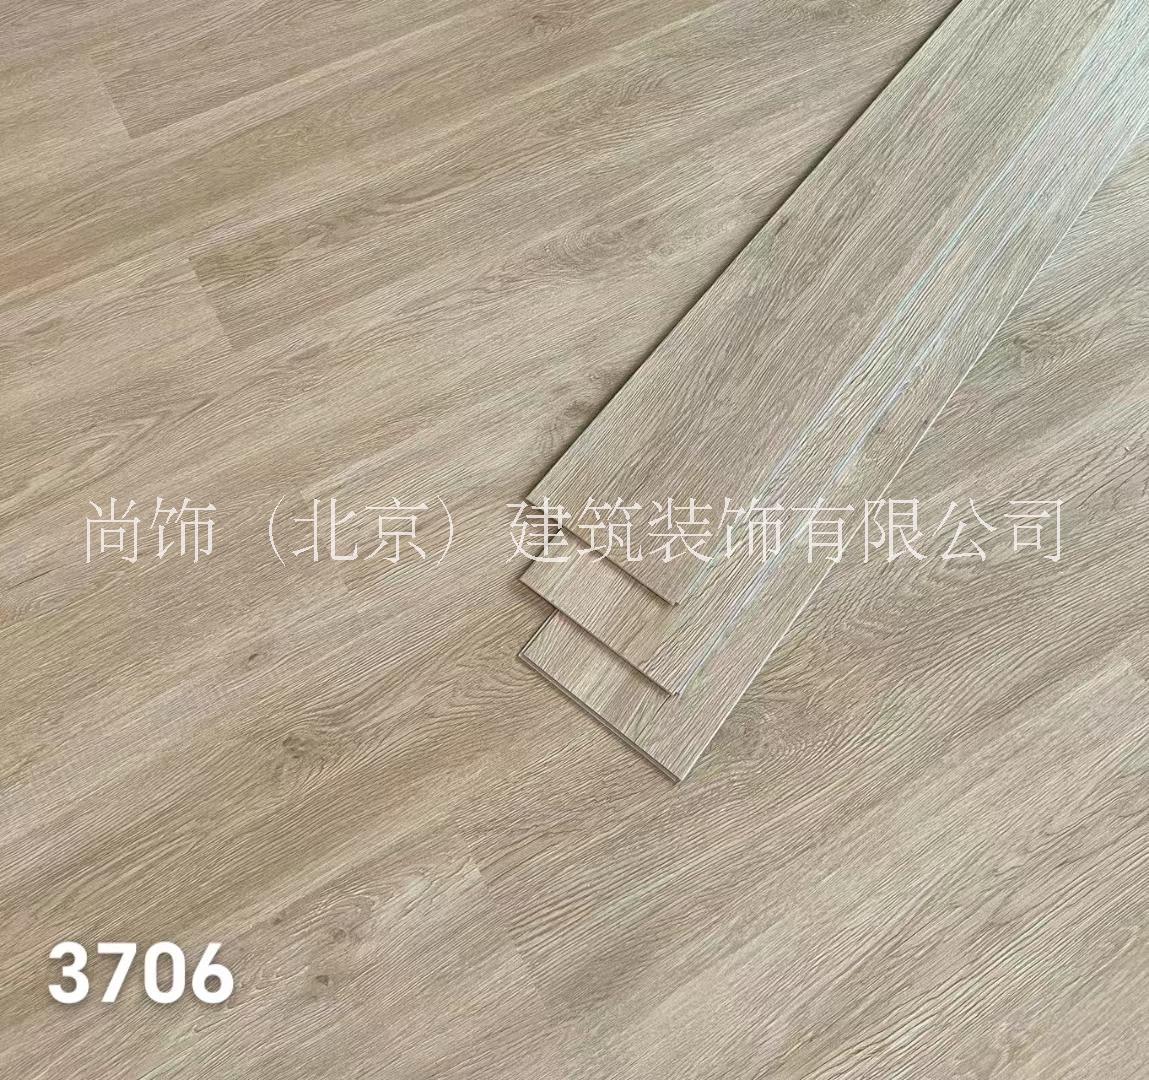 环保石塑地板 无醛spc地板 北京锁扣地板 酒店快装 spc石塑地板图片